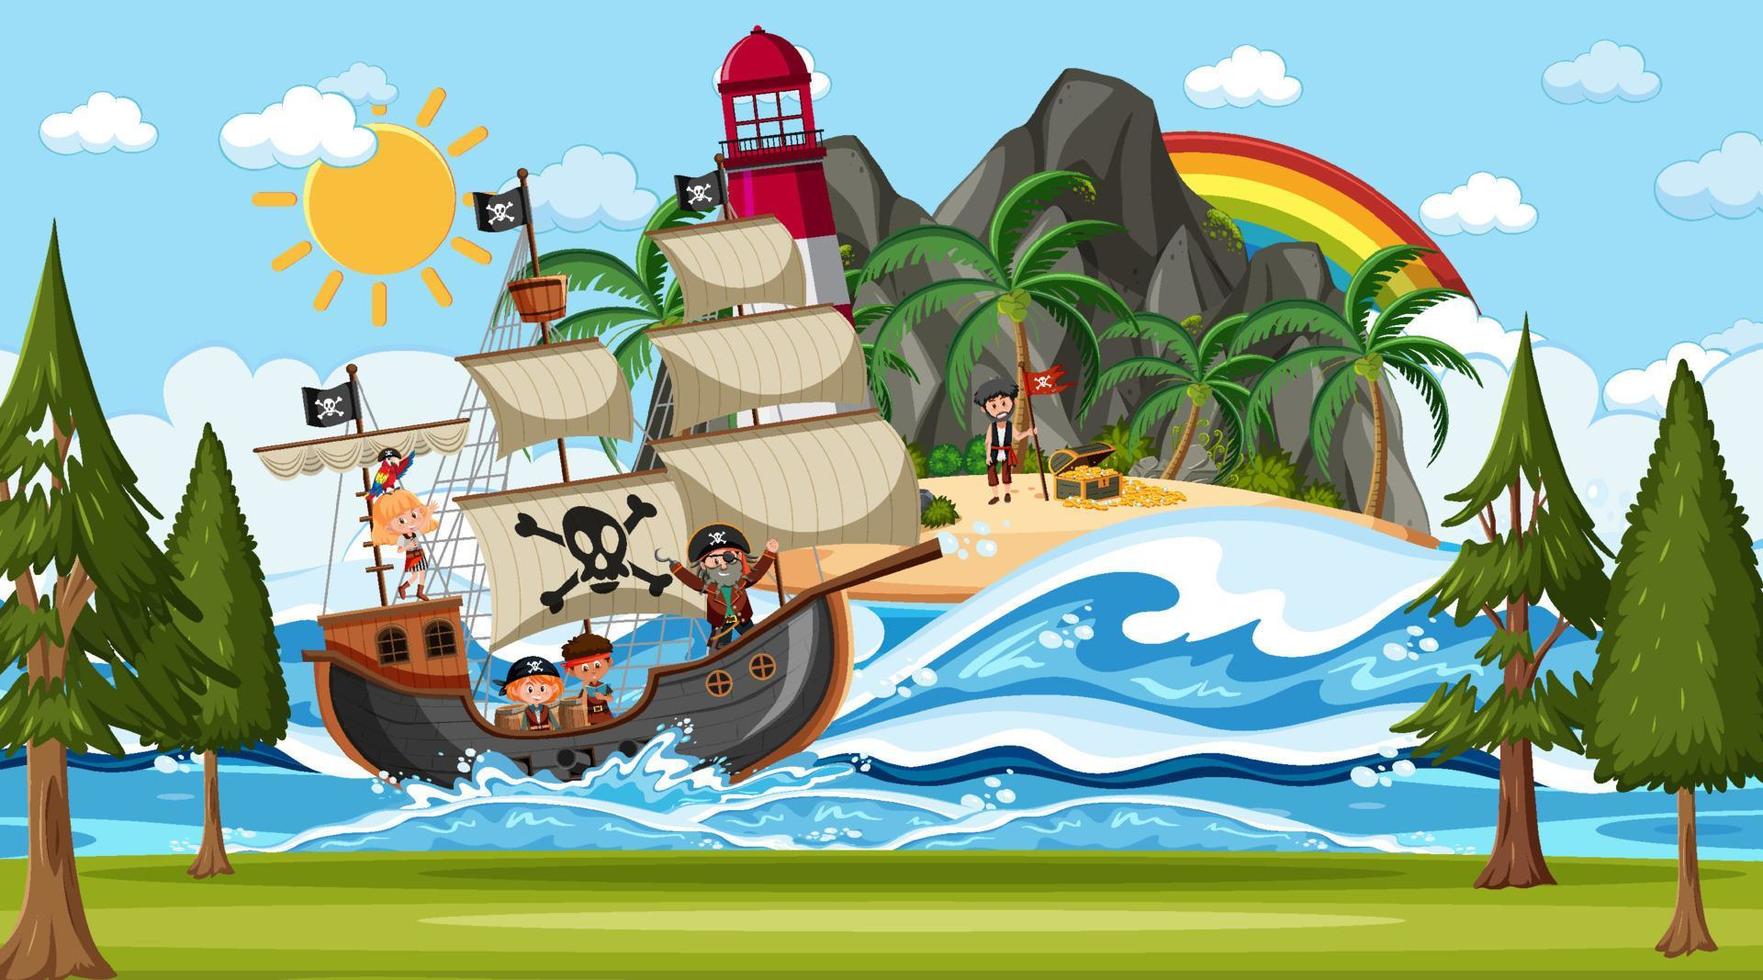 praia com navio pirata em cena diurna em estilo cartoon vetor